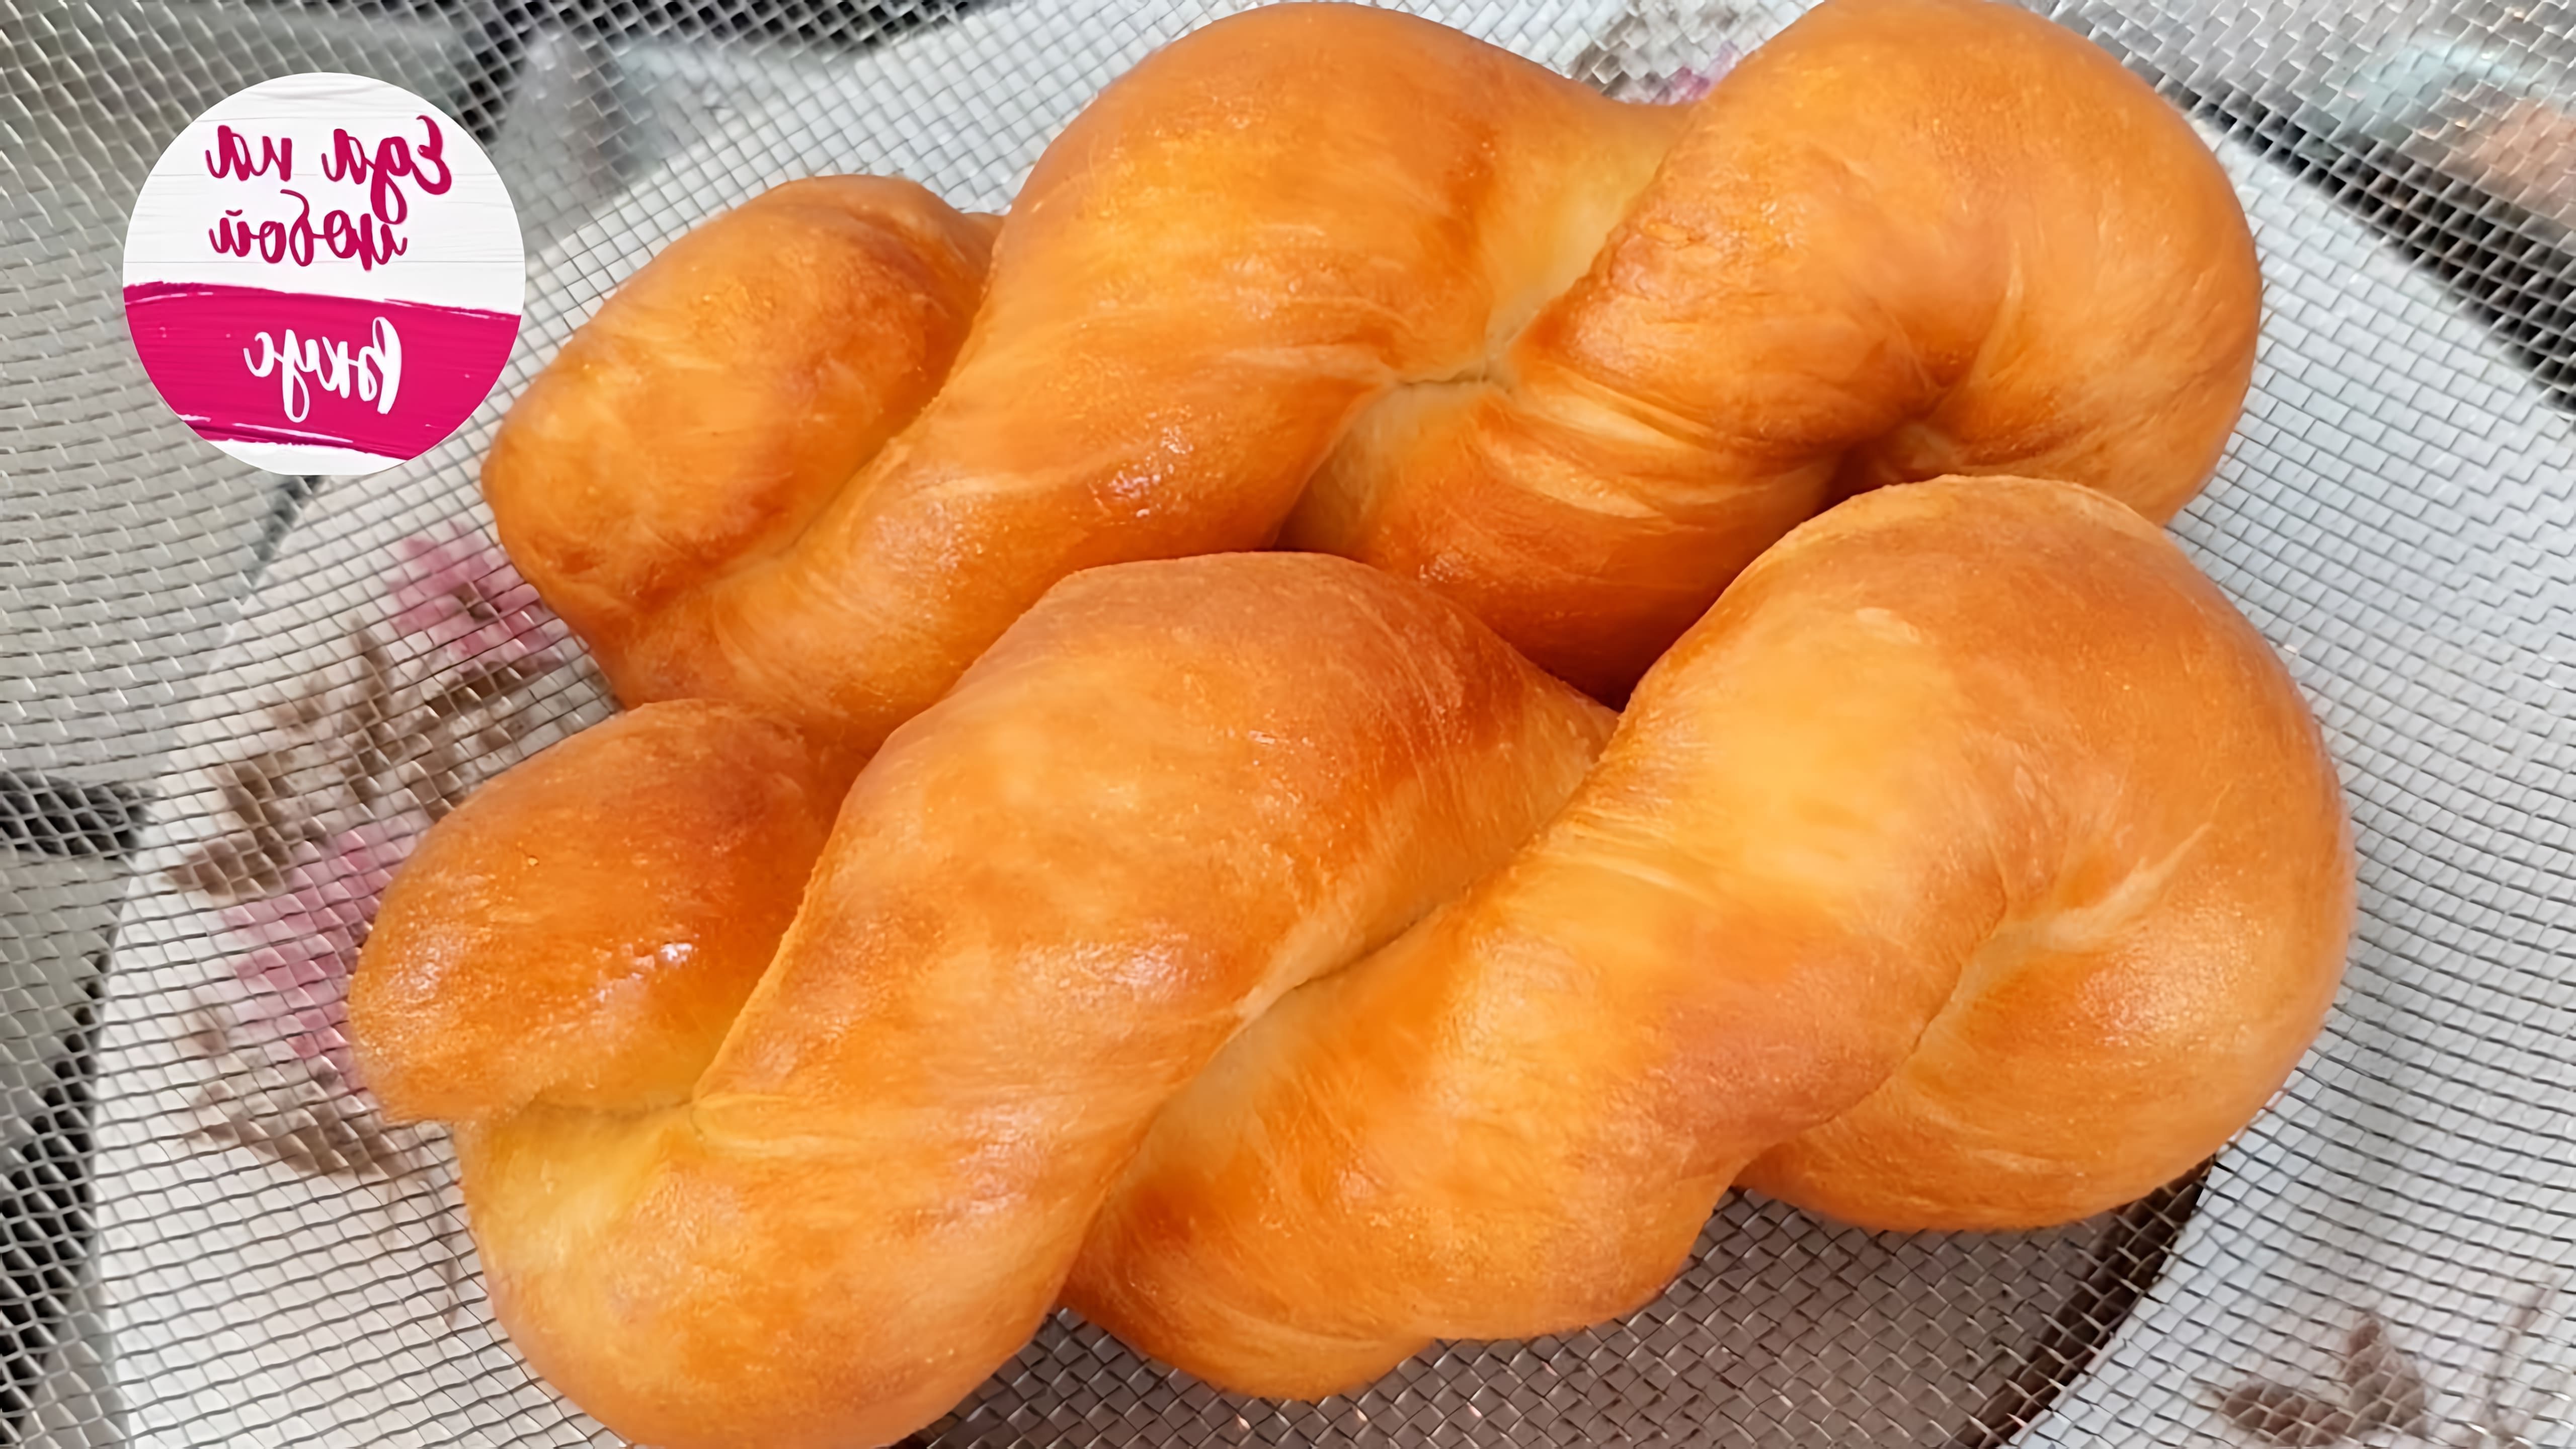 В этом видео демонстрируется процесс приготовления воздушных и скрученных пончиков по-корейски